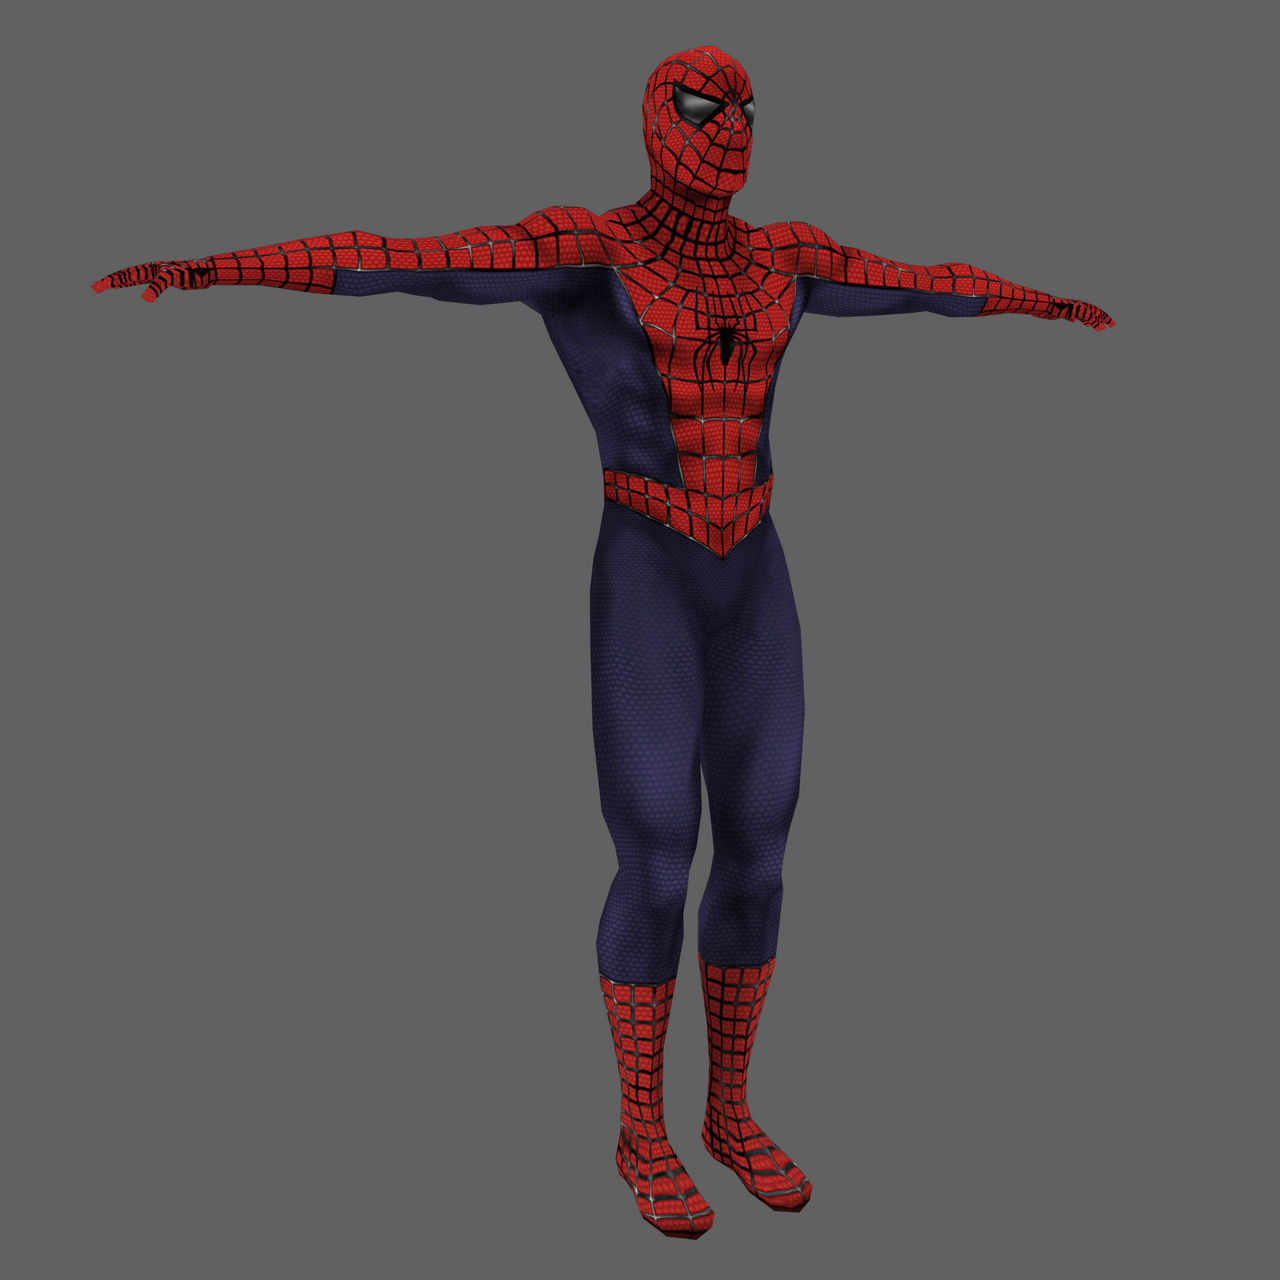 Spider-Man Movie Game 3D Model [DL] by carinhaqualquer on DeviantArt